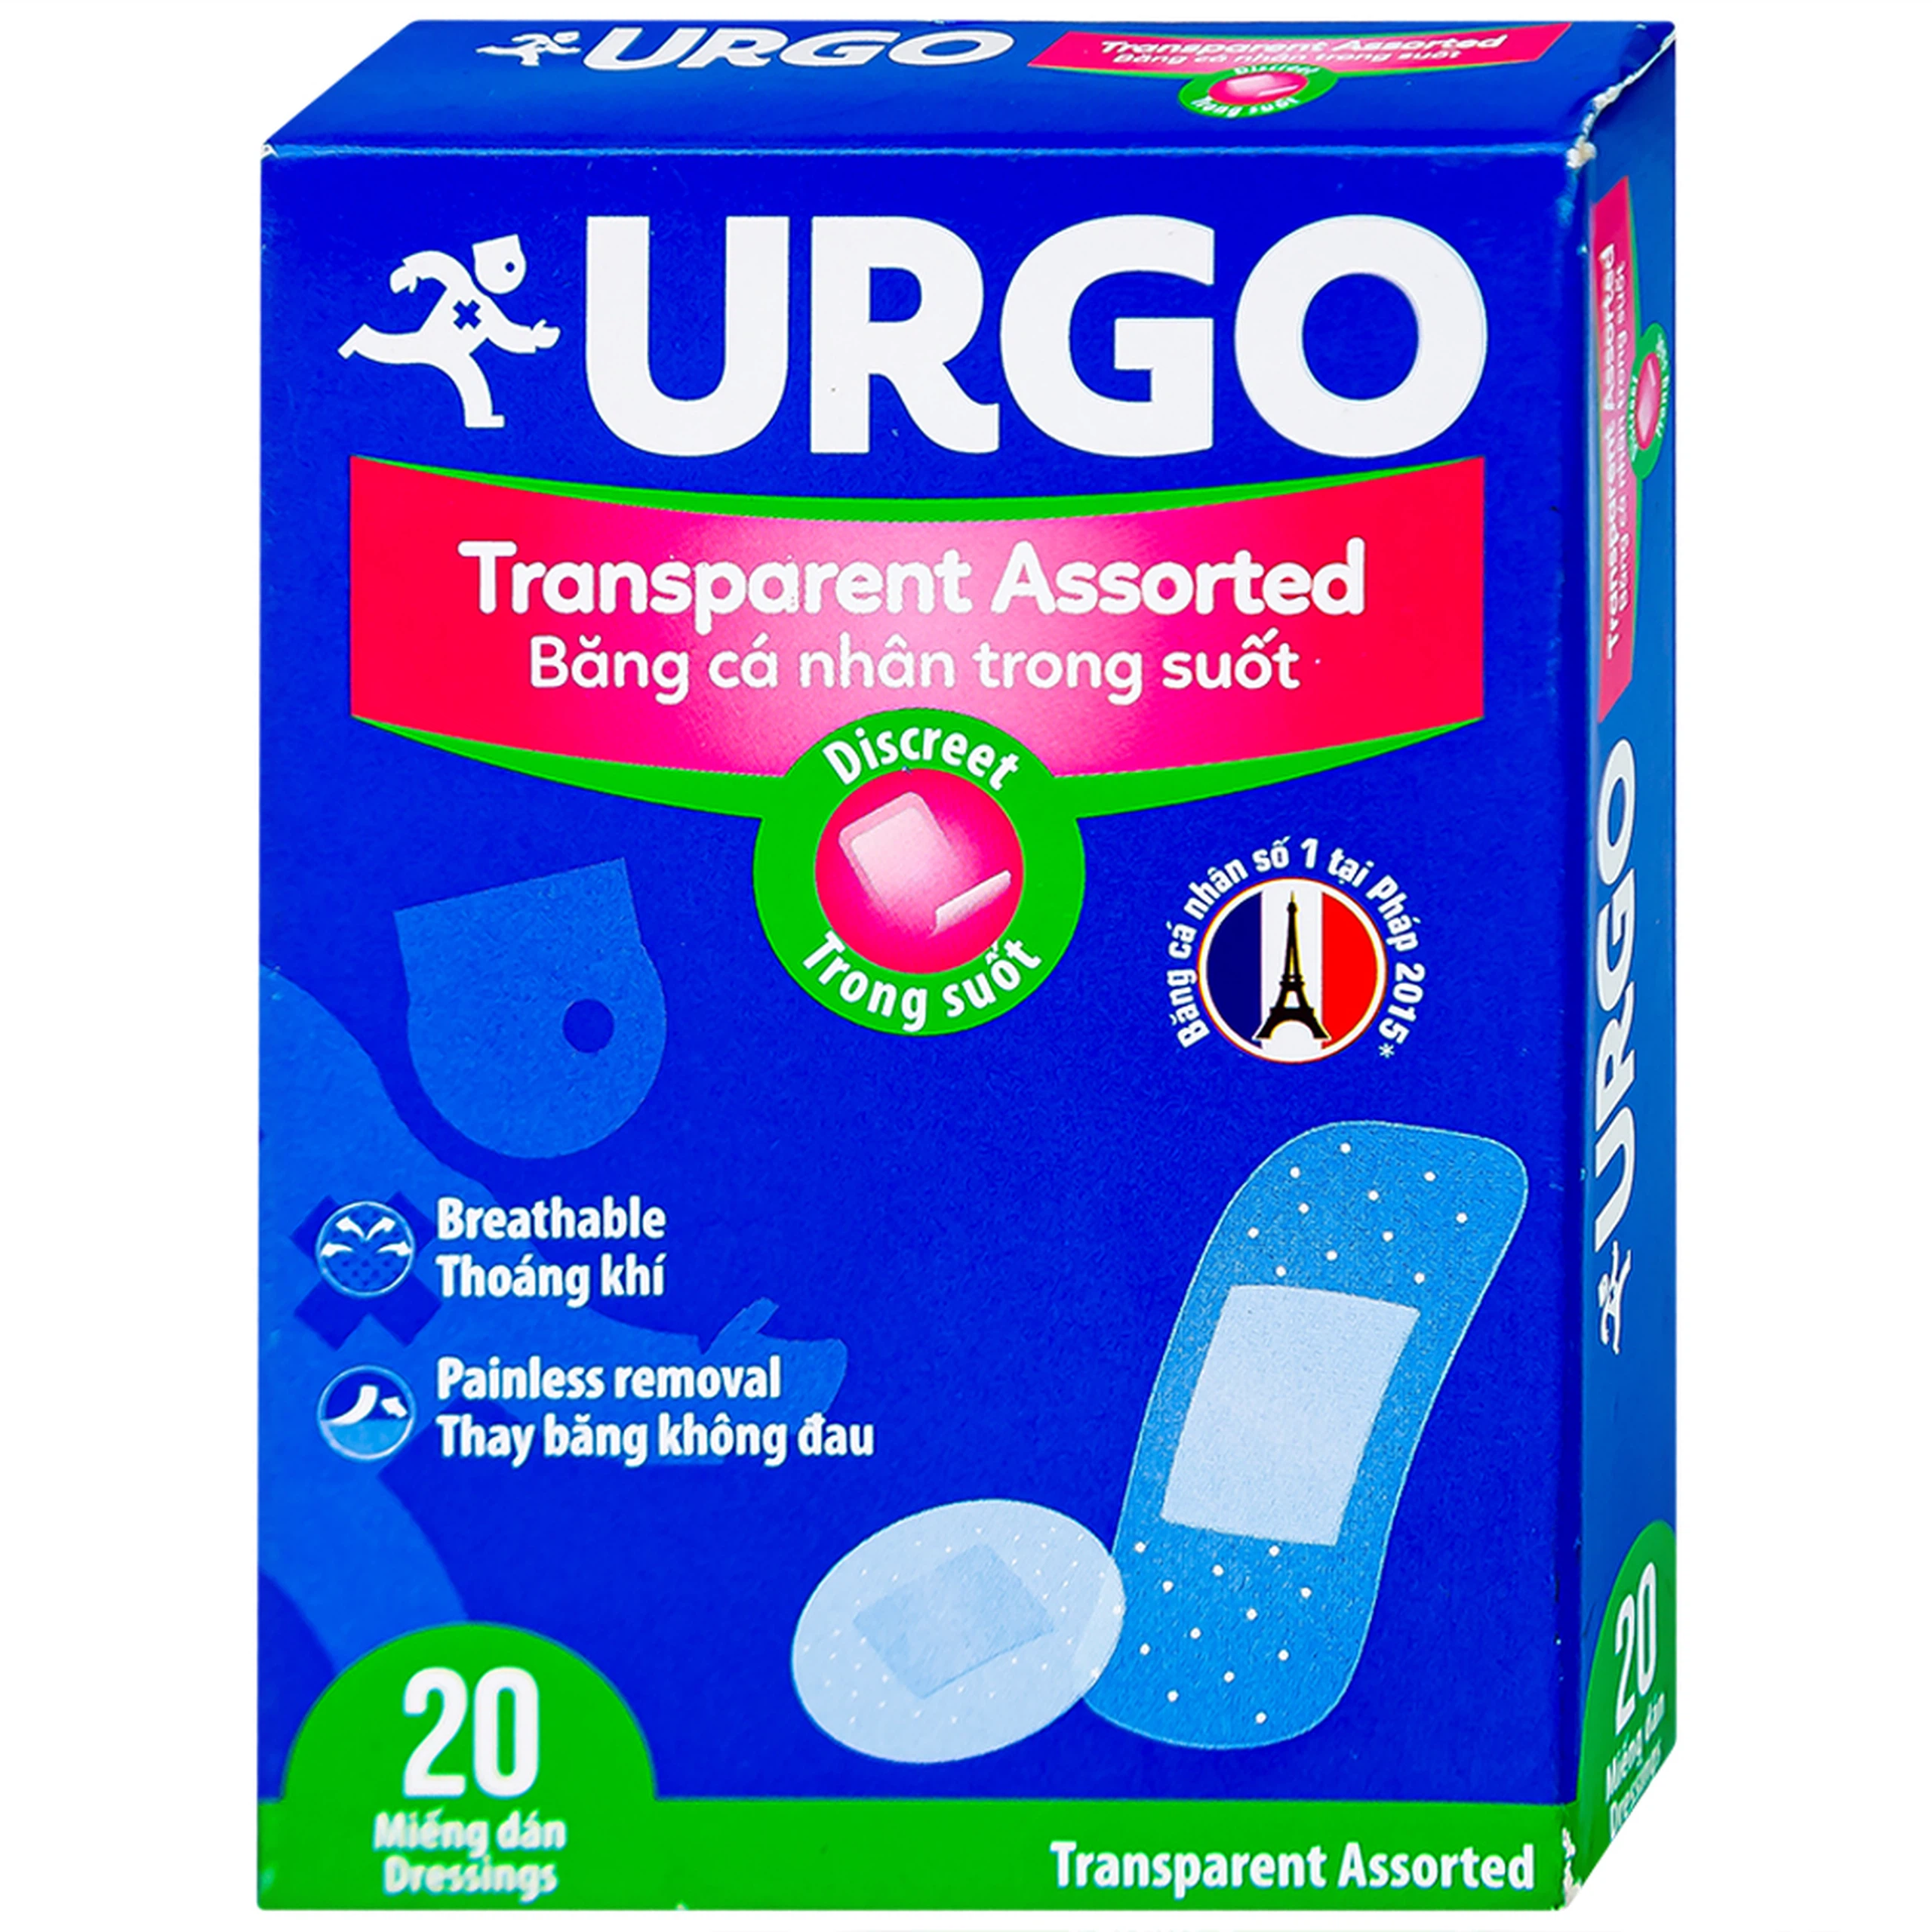 Băng cá nhân trong suốt Urgo Transparent Assorted bảo vệ các vết thương nhỏ, vết trầy xước, rách da (20 miếng)